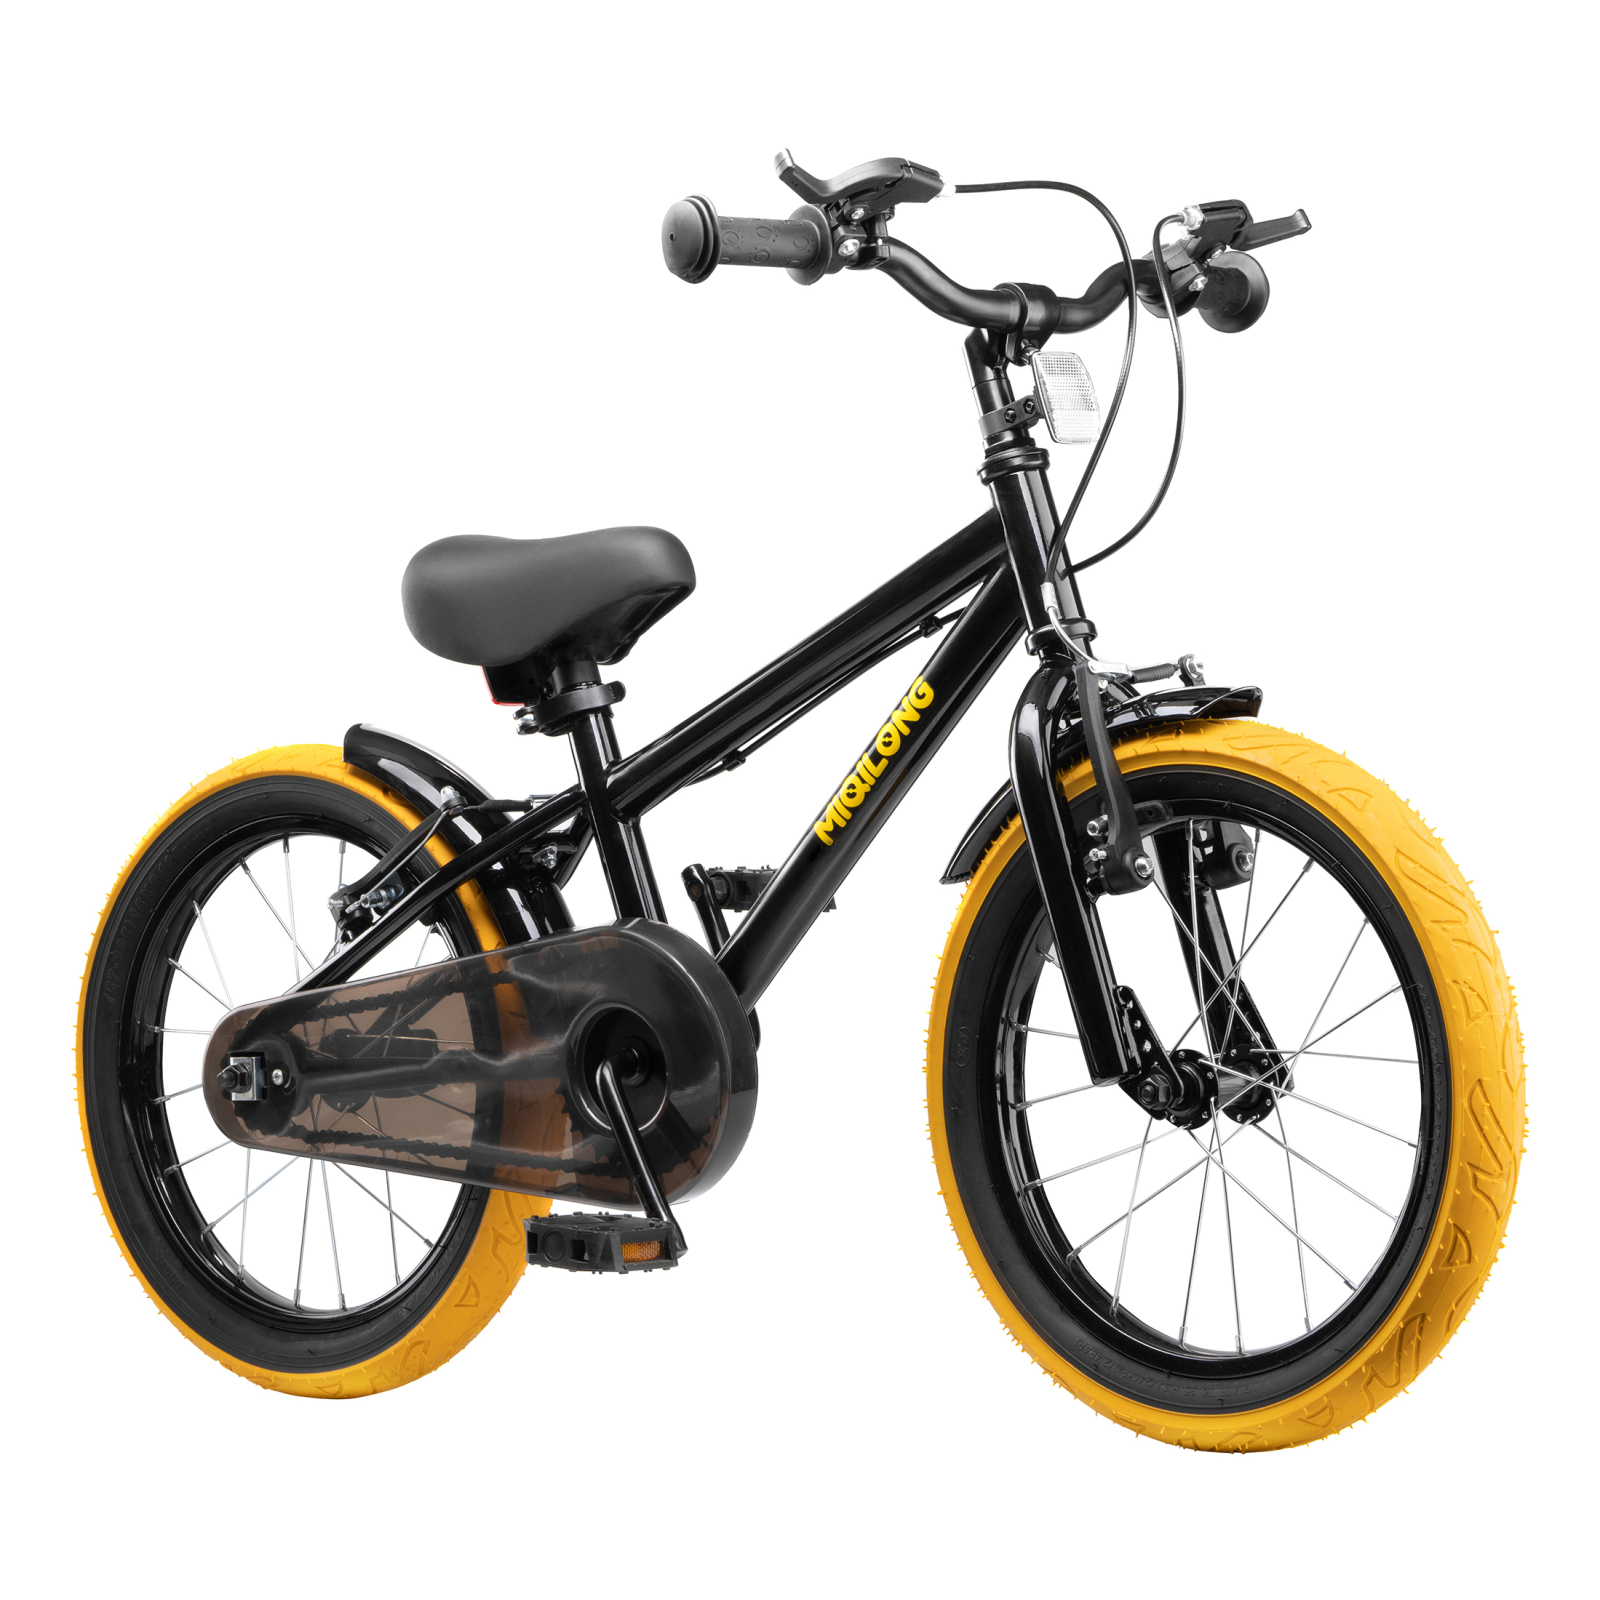 Детский велосипед Miqilong ST Черный 16` (ATW-ST16-BLACK) изображение 2